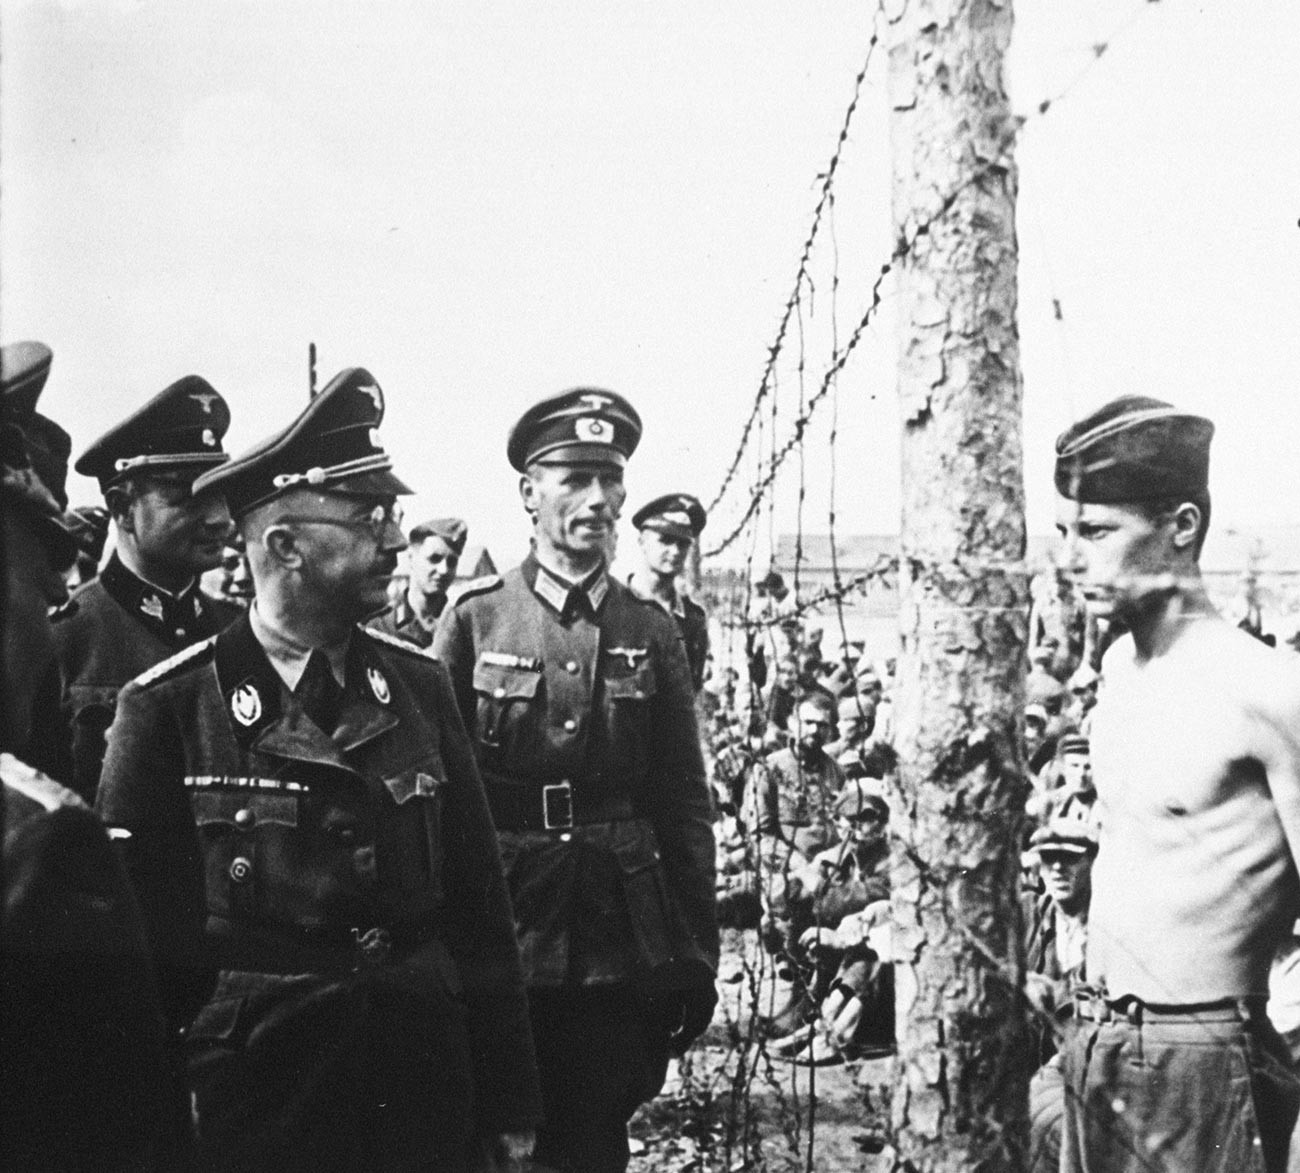 ゲシュタポと武装親衛隊のトップである親衛隊全国指導者ハインリヒ・ヒムラーがソ連領内の捕虜収容所を視察。1941年8月。